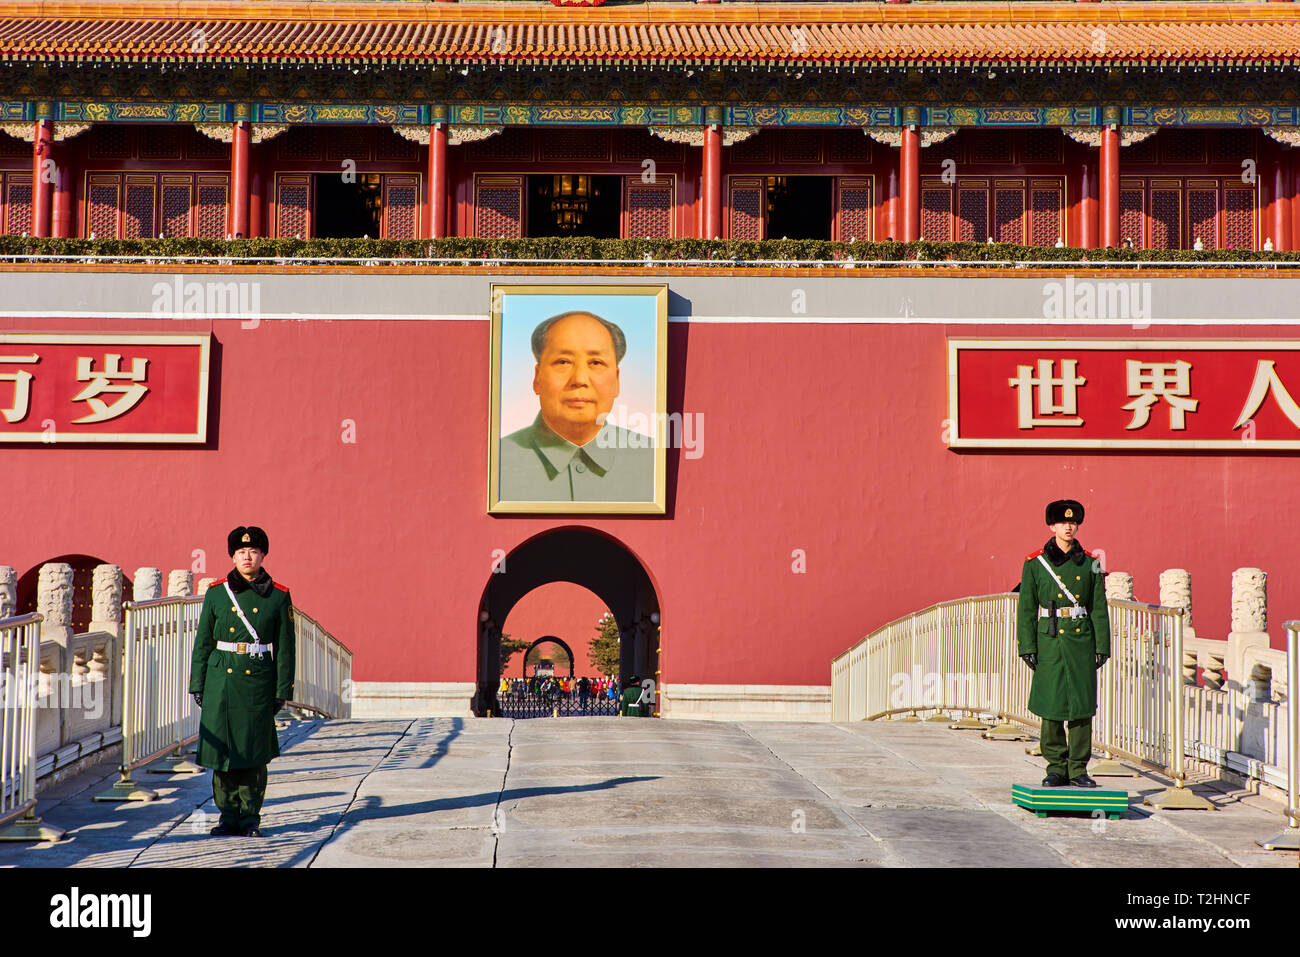 Security Guards am Tiananmen, oder das Tor des Himmlischen Friedens, die Verbotene Stadt, Beijing, China, Ostasien Stockfoto